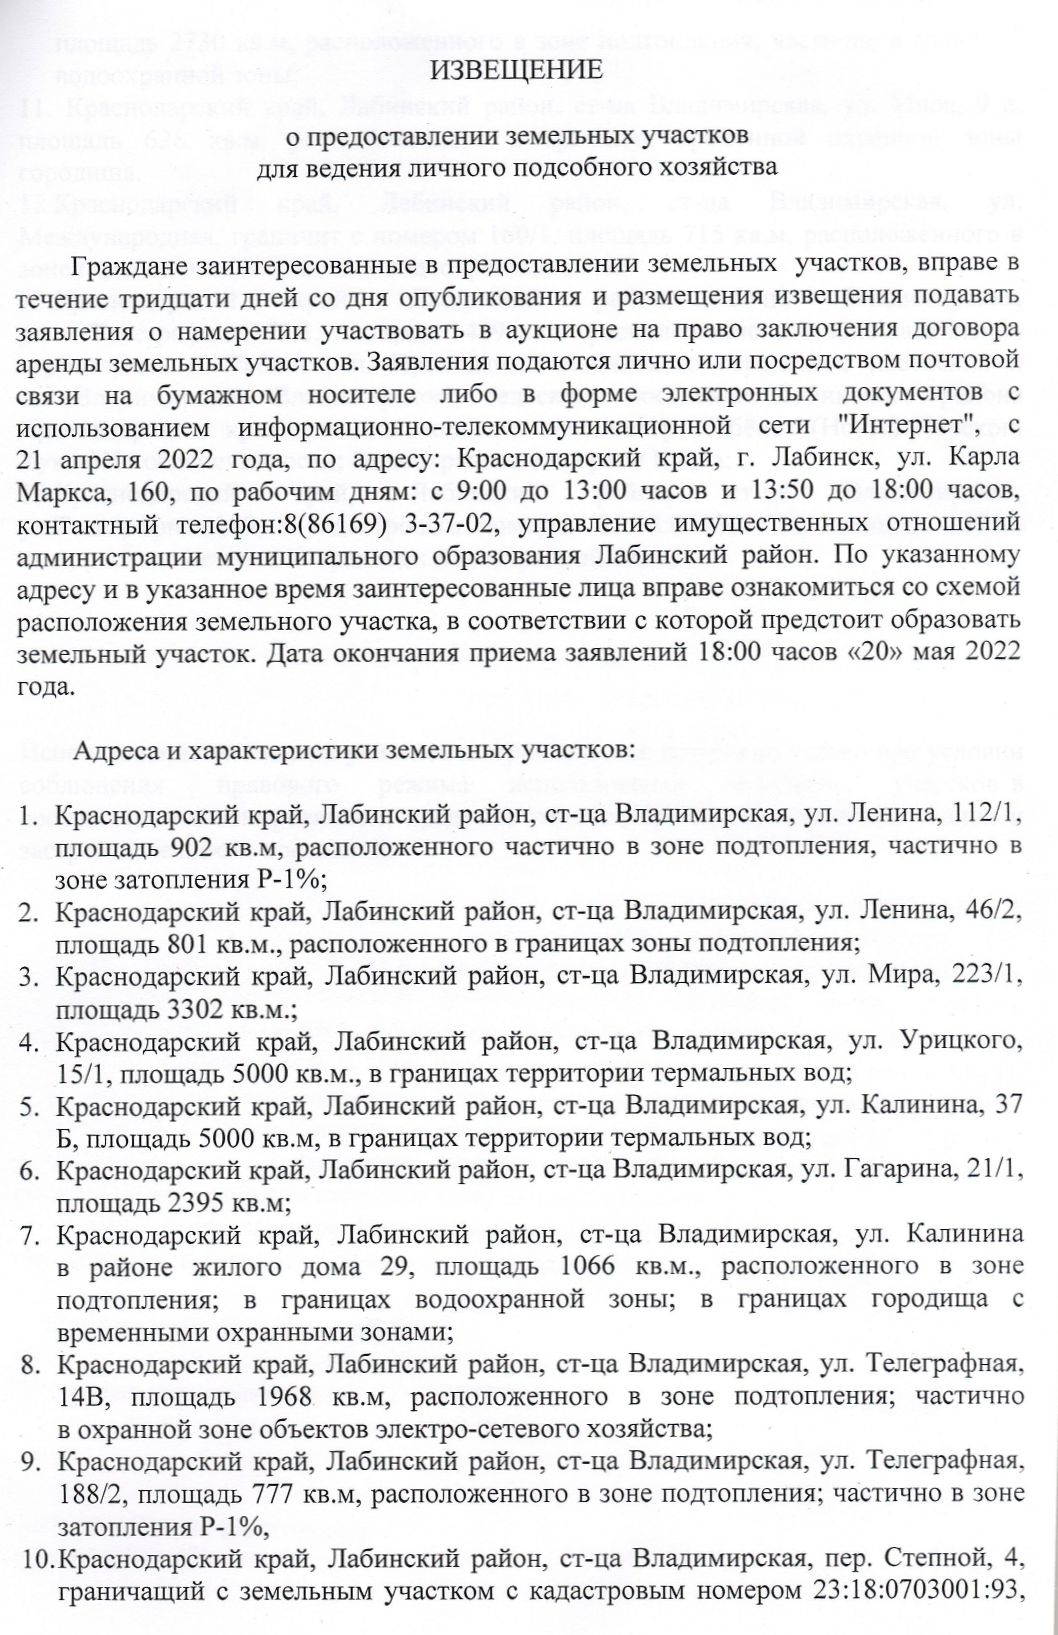 Тараськовой И.В. page 0002